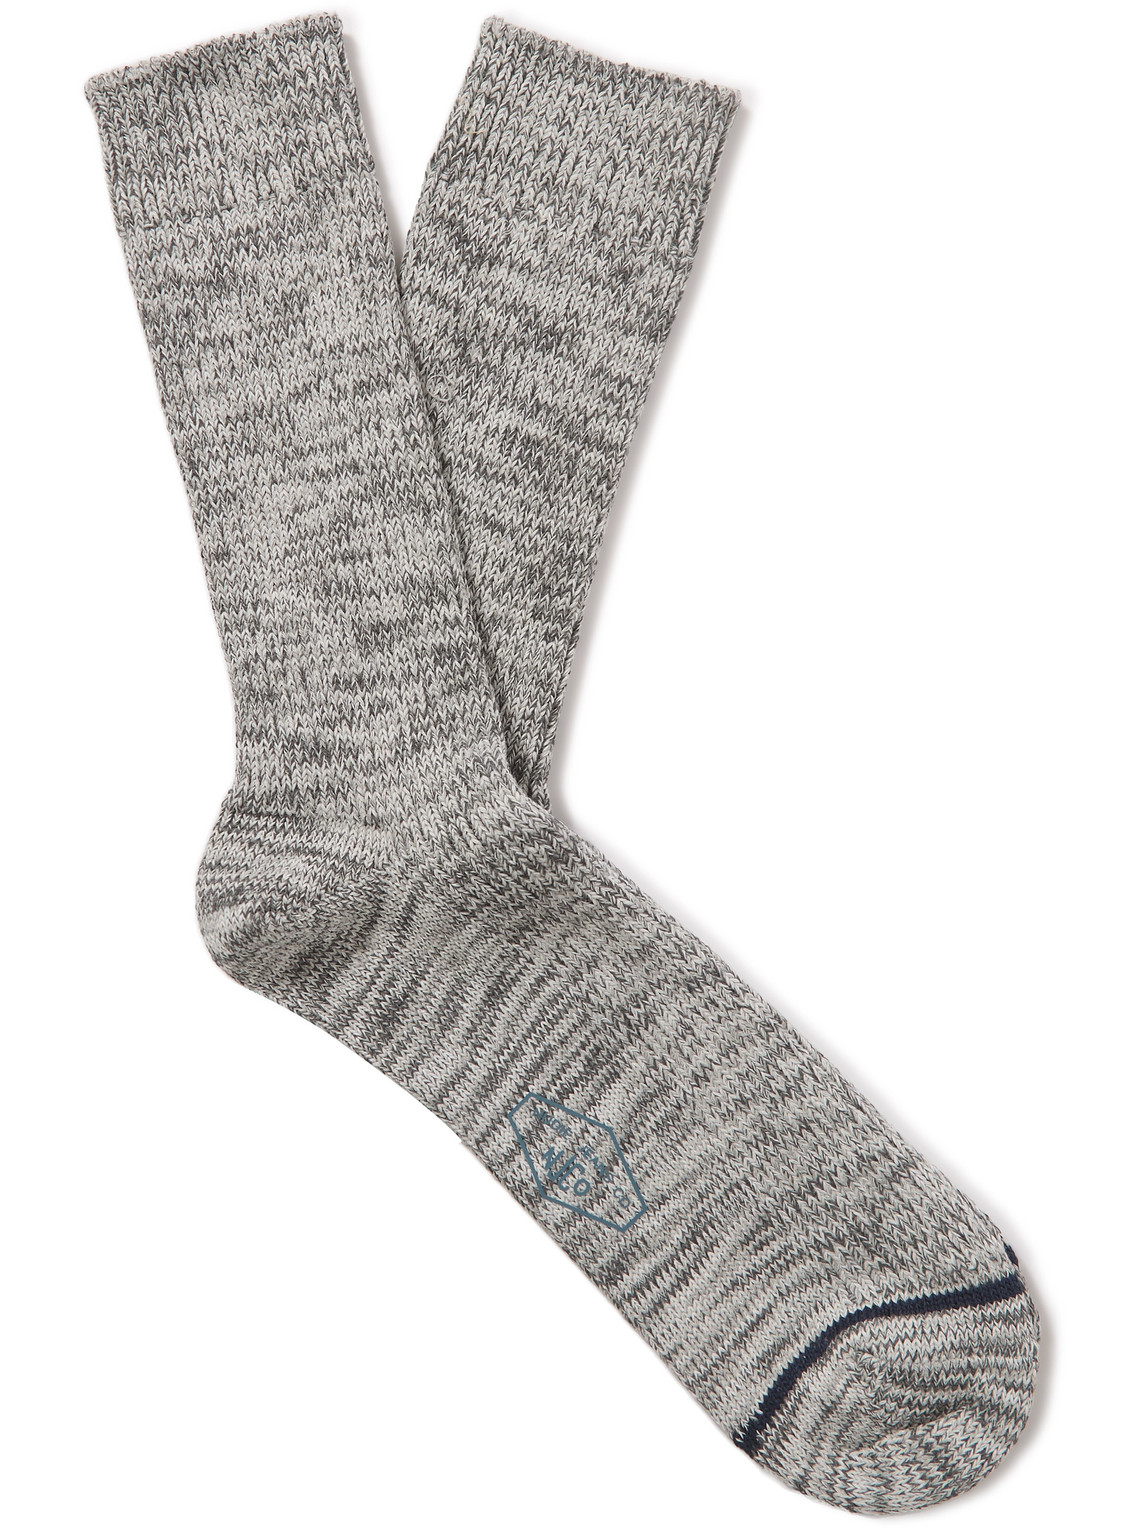 Nudie Jeans Knitted Socks In Gray